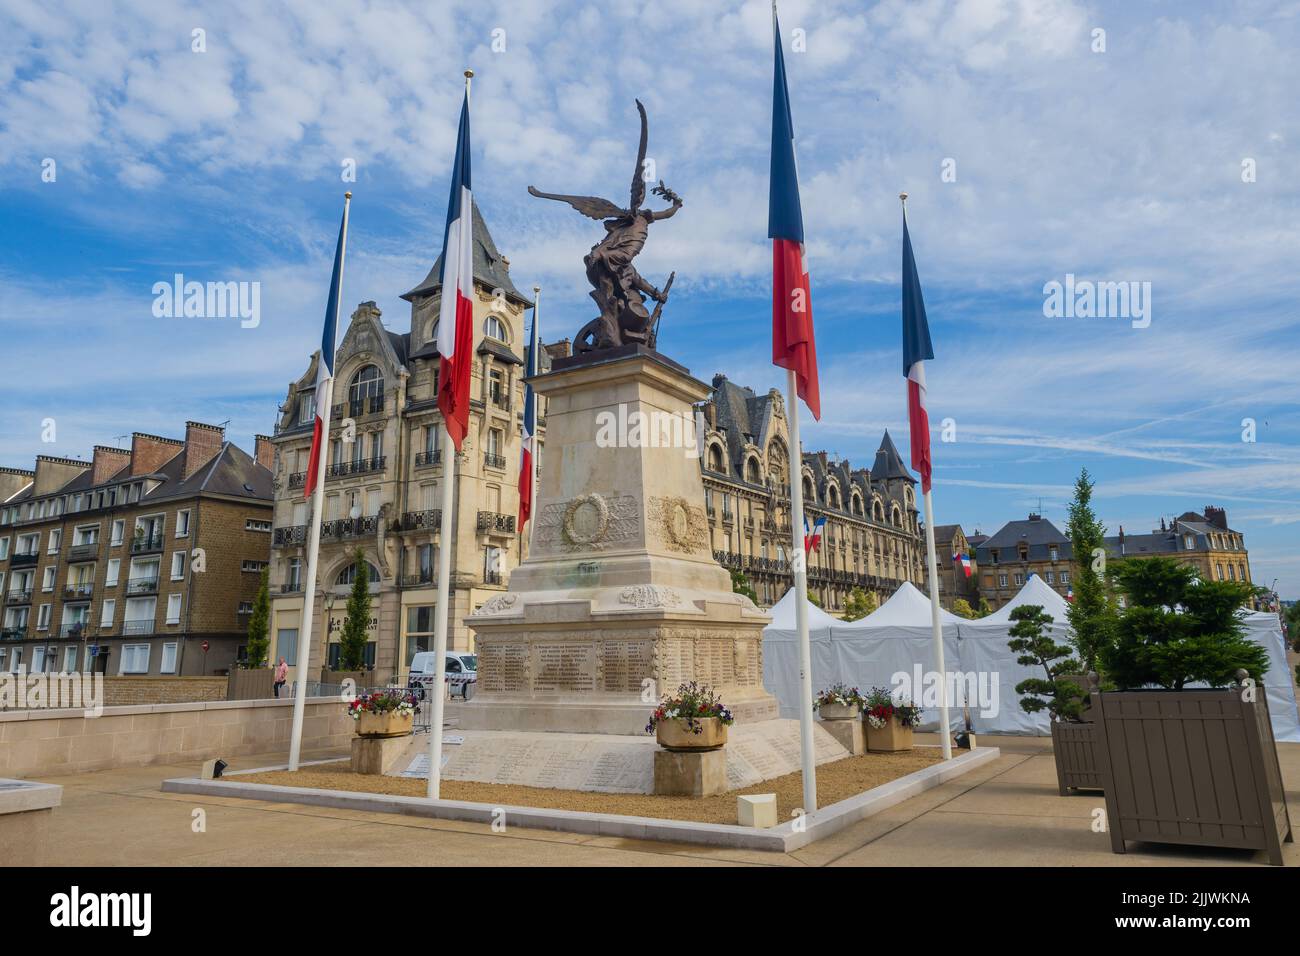 14.07.2 22 Charleville-Mézières, Ardennest, Gran d Est, France. Charleville-Mézières war memorial near to the town hall Stock Photo